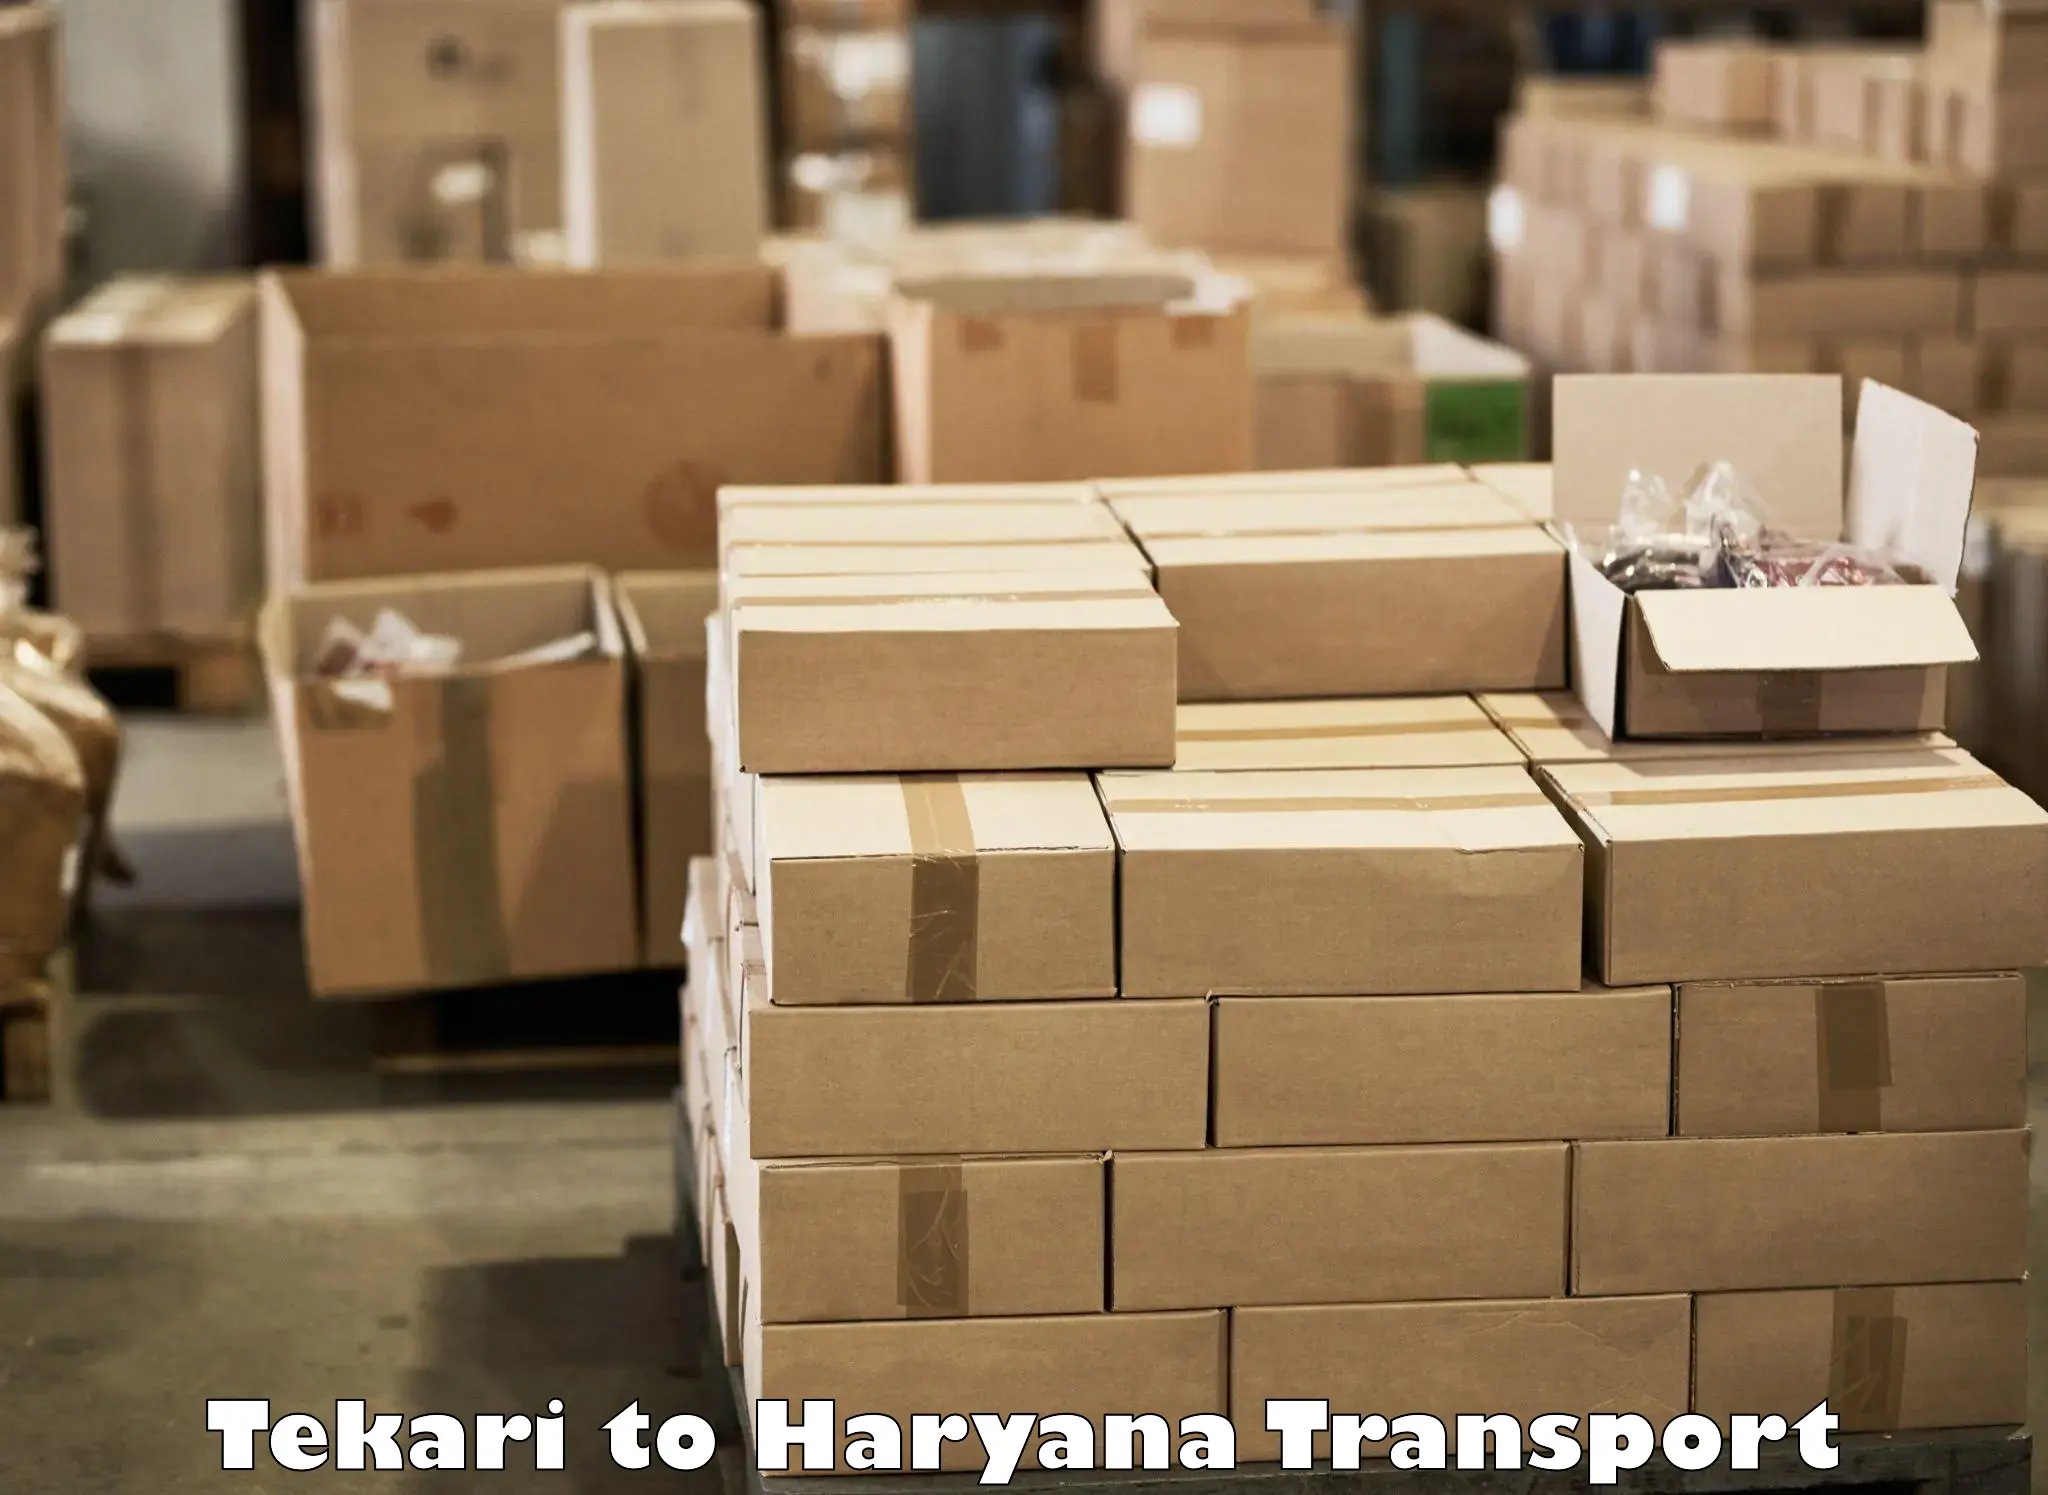 Intercity goods transport Tekari to Charkhari